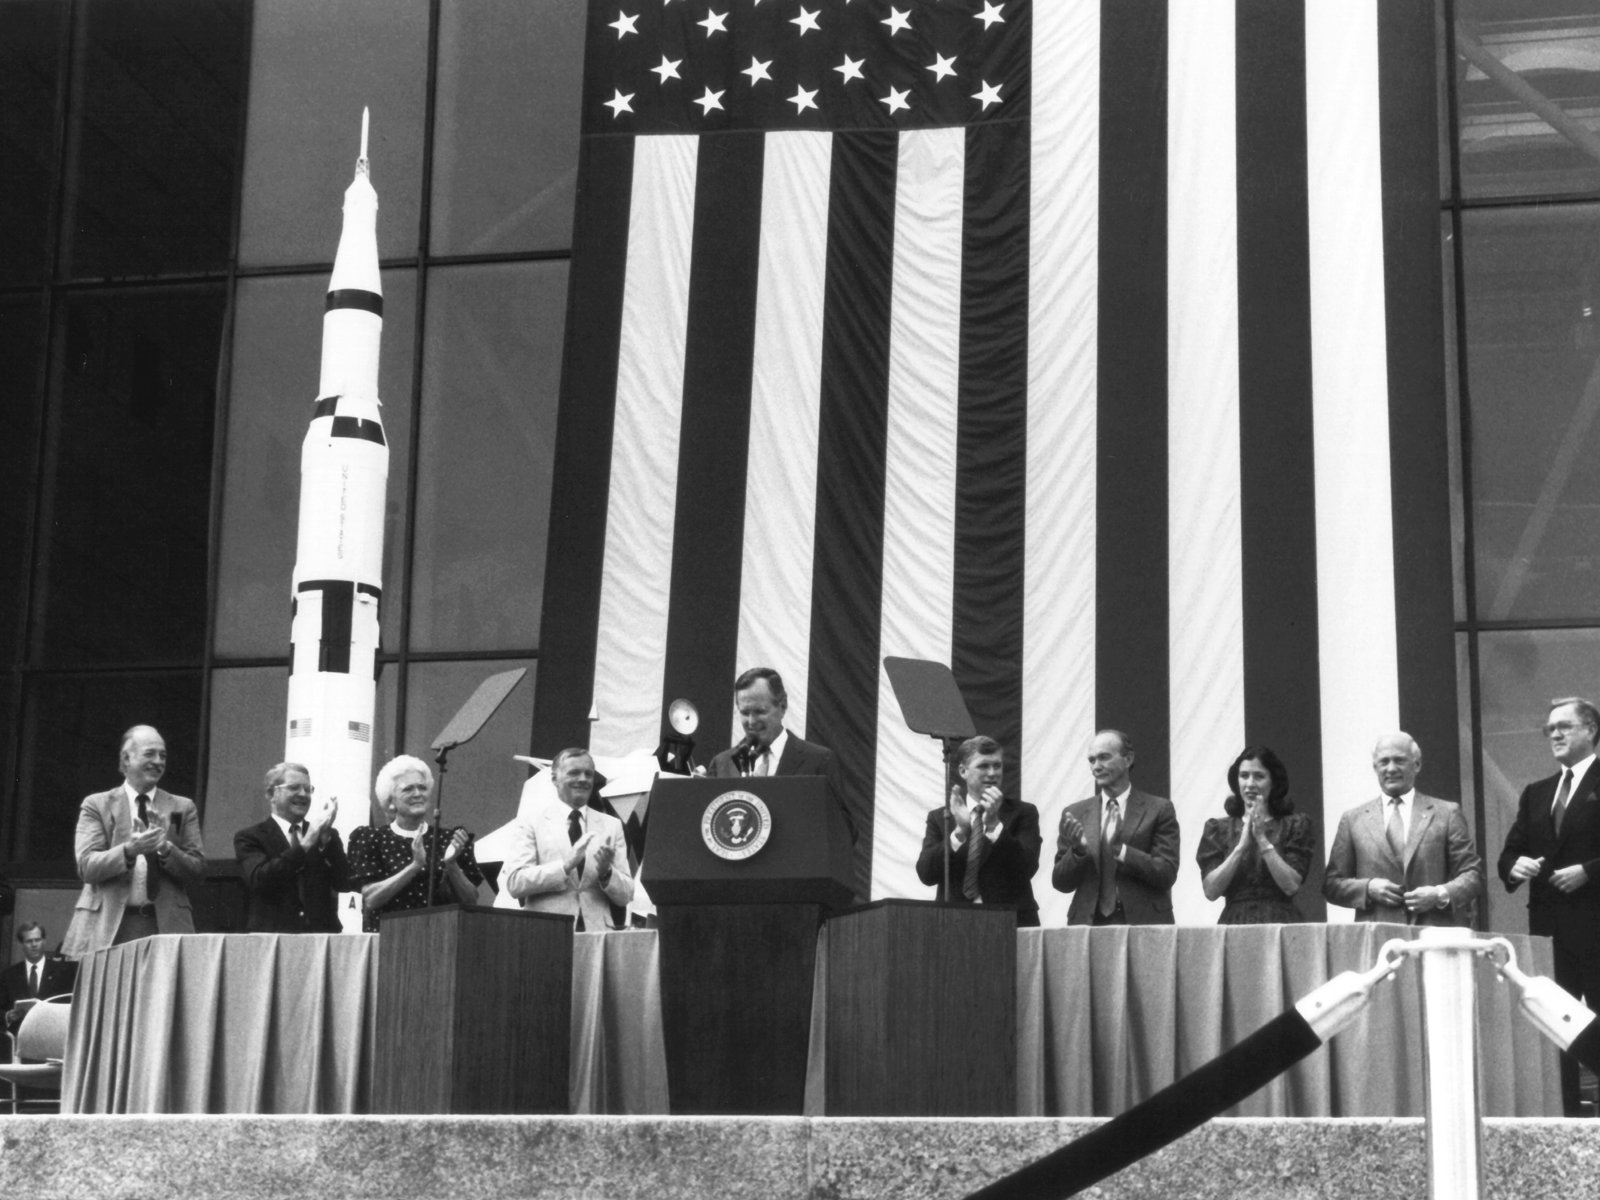 壁纸1600x1200One Giant Leap for Mankind  President George Bush and Apollo 11 Astronauts 1989年老布什总统和登月英雄壁纸 阿波罗11号登月40周年纪念壁纸壁纸 阿波罗11号登月40周年纪念壁纸图片 阿波罗11号登月40周年纪念壁纸素材 人文壁纸 人文图库 人文图片素材桌面壁纸